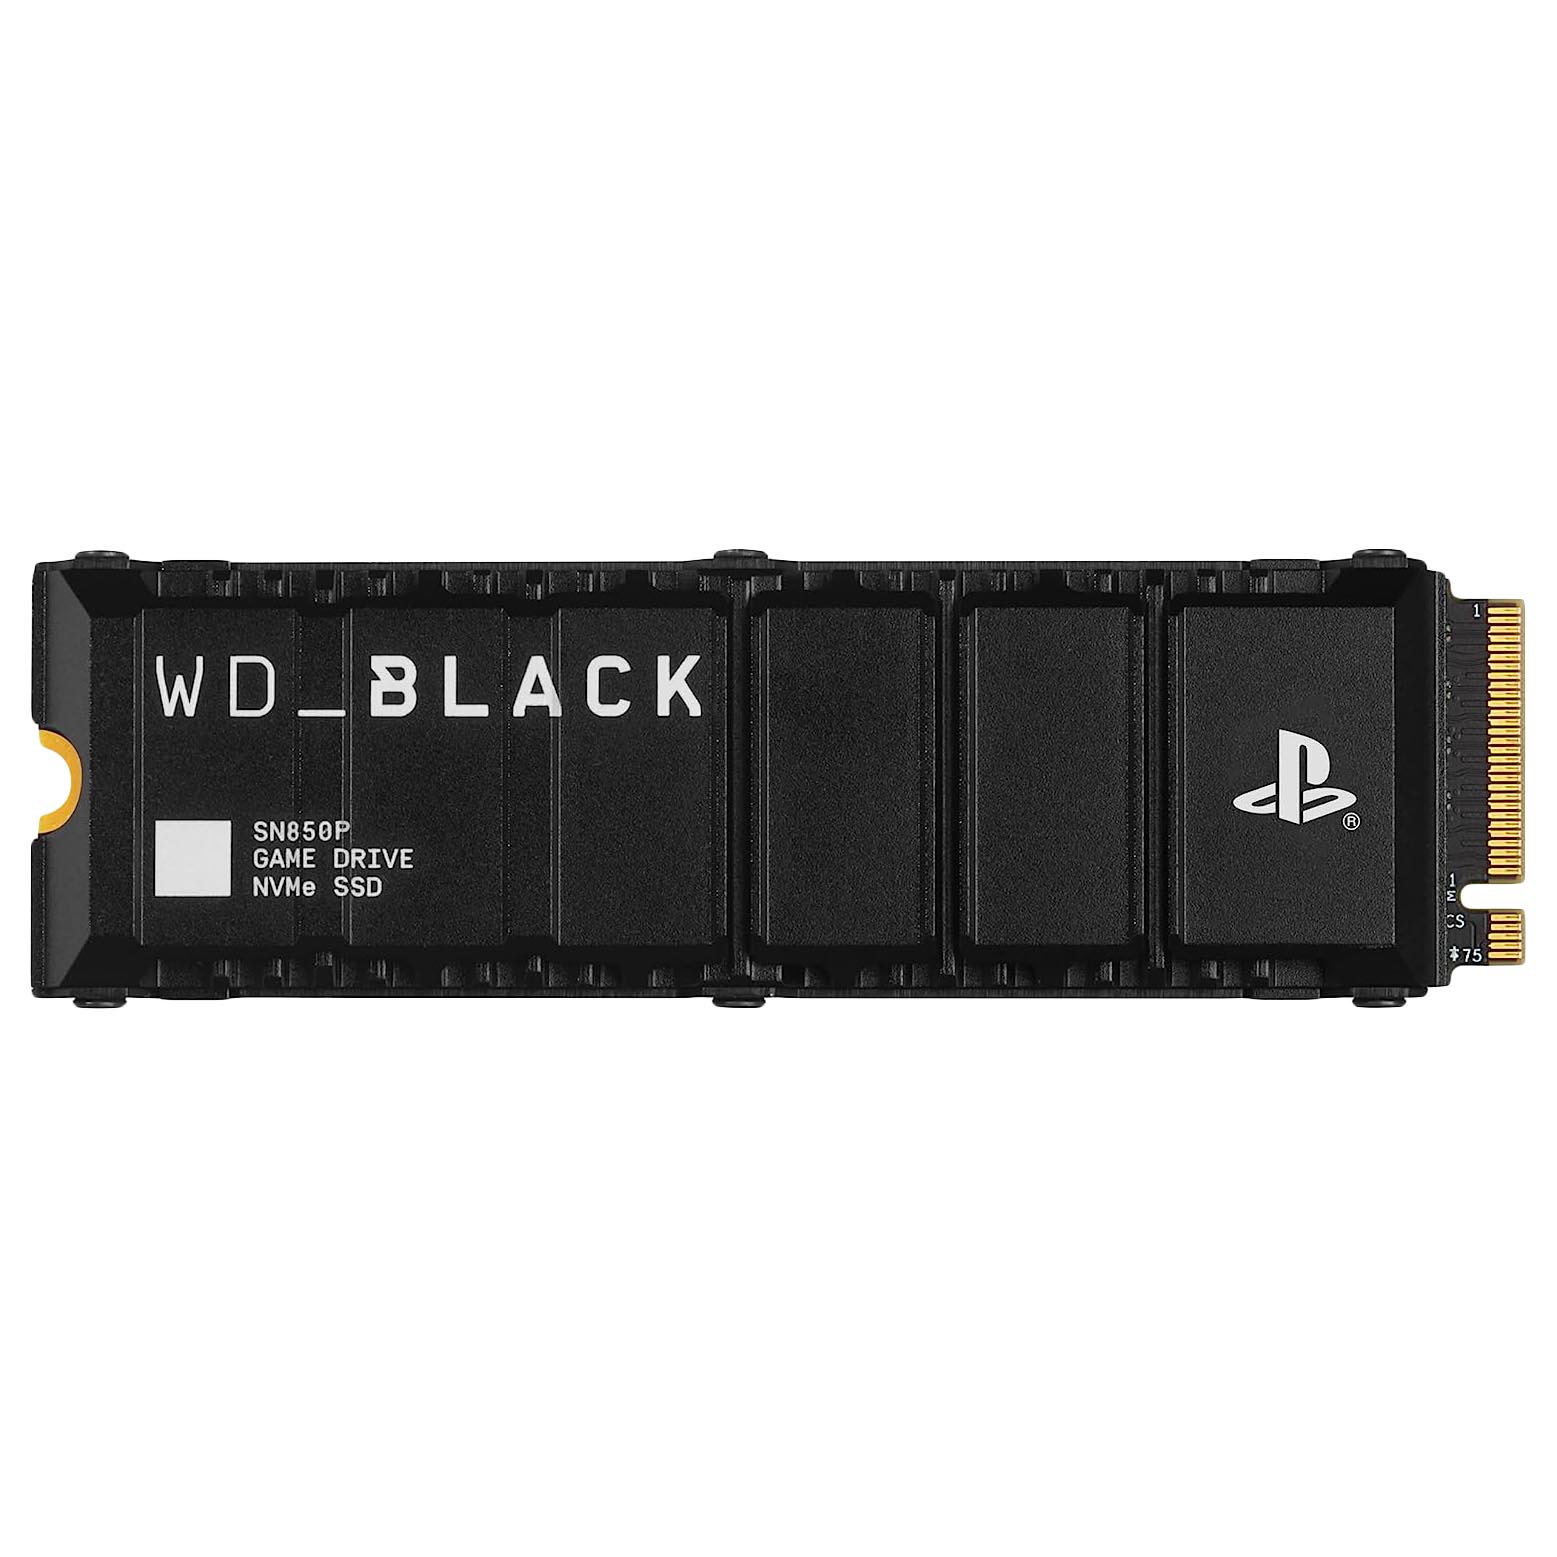 Внутренний твердотельный накопитель Western Digital WD Black SN850P PS5, WDBBYV0010BNC-CRSN, 1Тб, M.2 2280 цена и фото